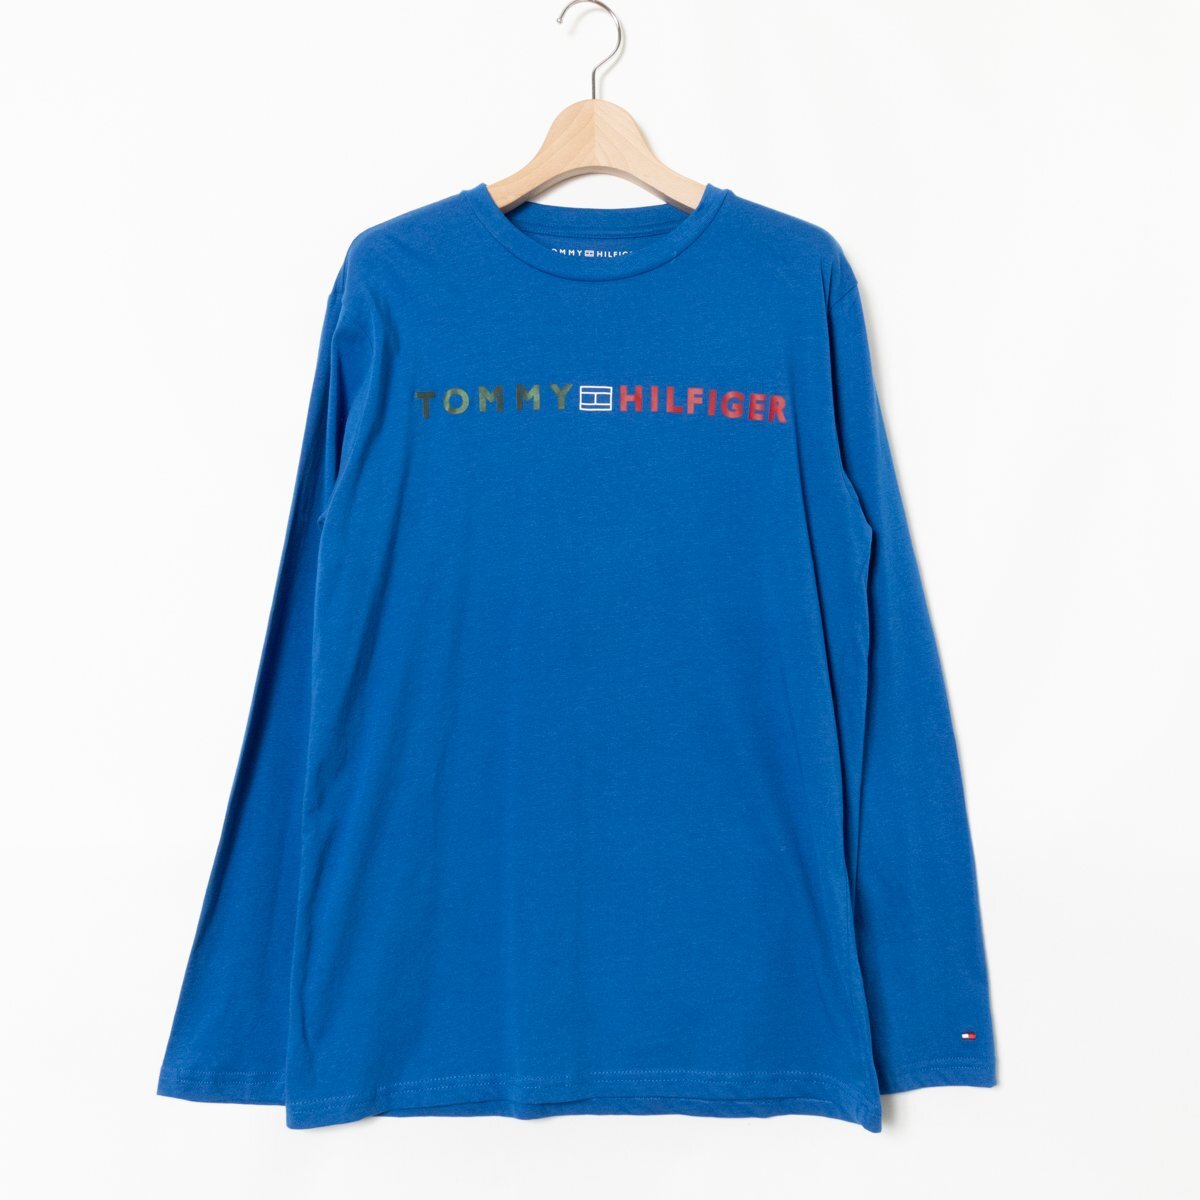 タグ付き 未使用 Tommy Hilfiger トミー ヒルフィガー 長袖 Tシャツ ロゴ トップス XLサイズ 綿100% コットン ブルー系 カジュアルの画像1